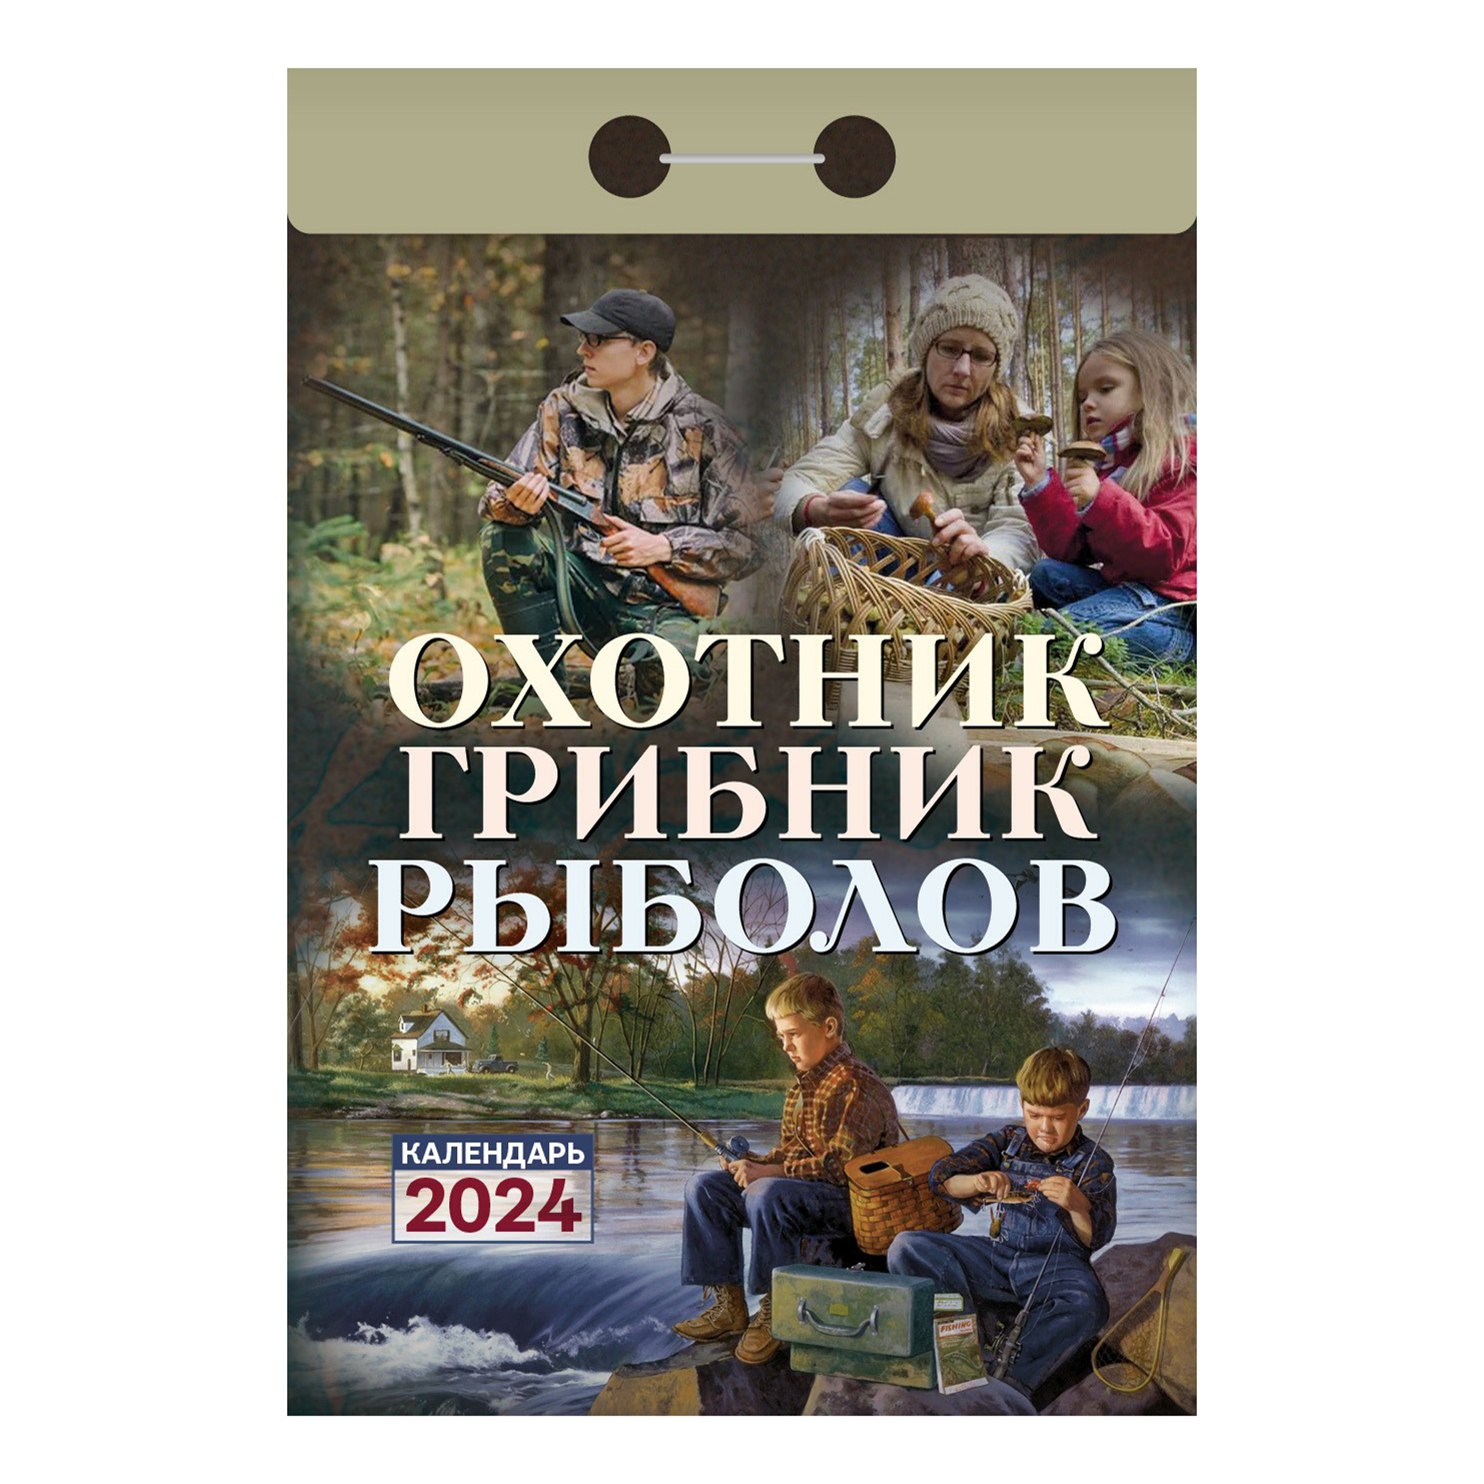 Календарь настенный отрывной Охотник, грибник, рыболов на 2024 год 77 х 114 мм